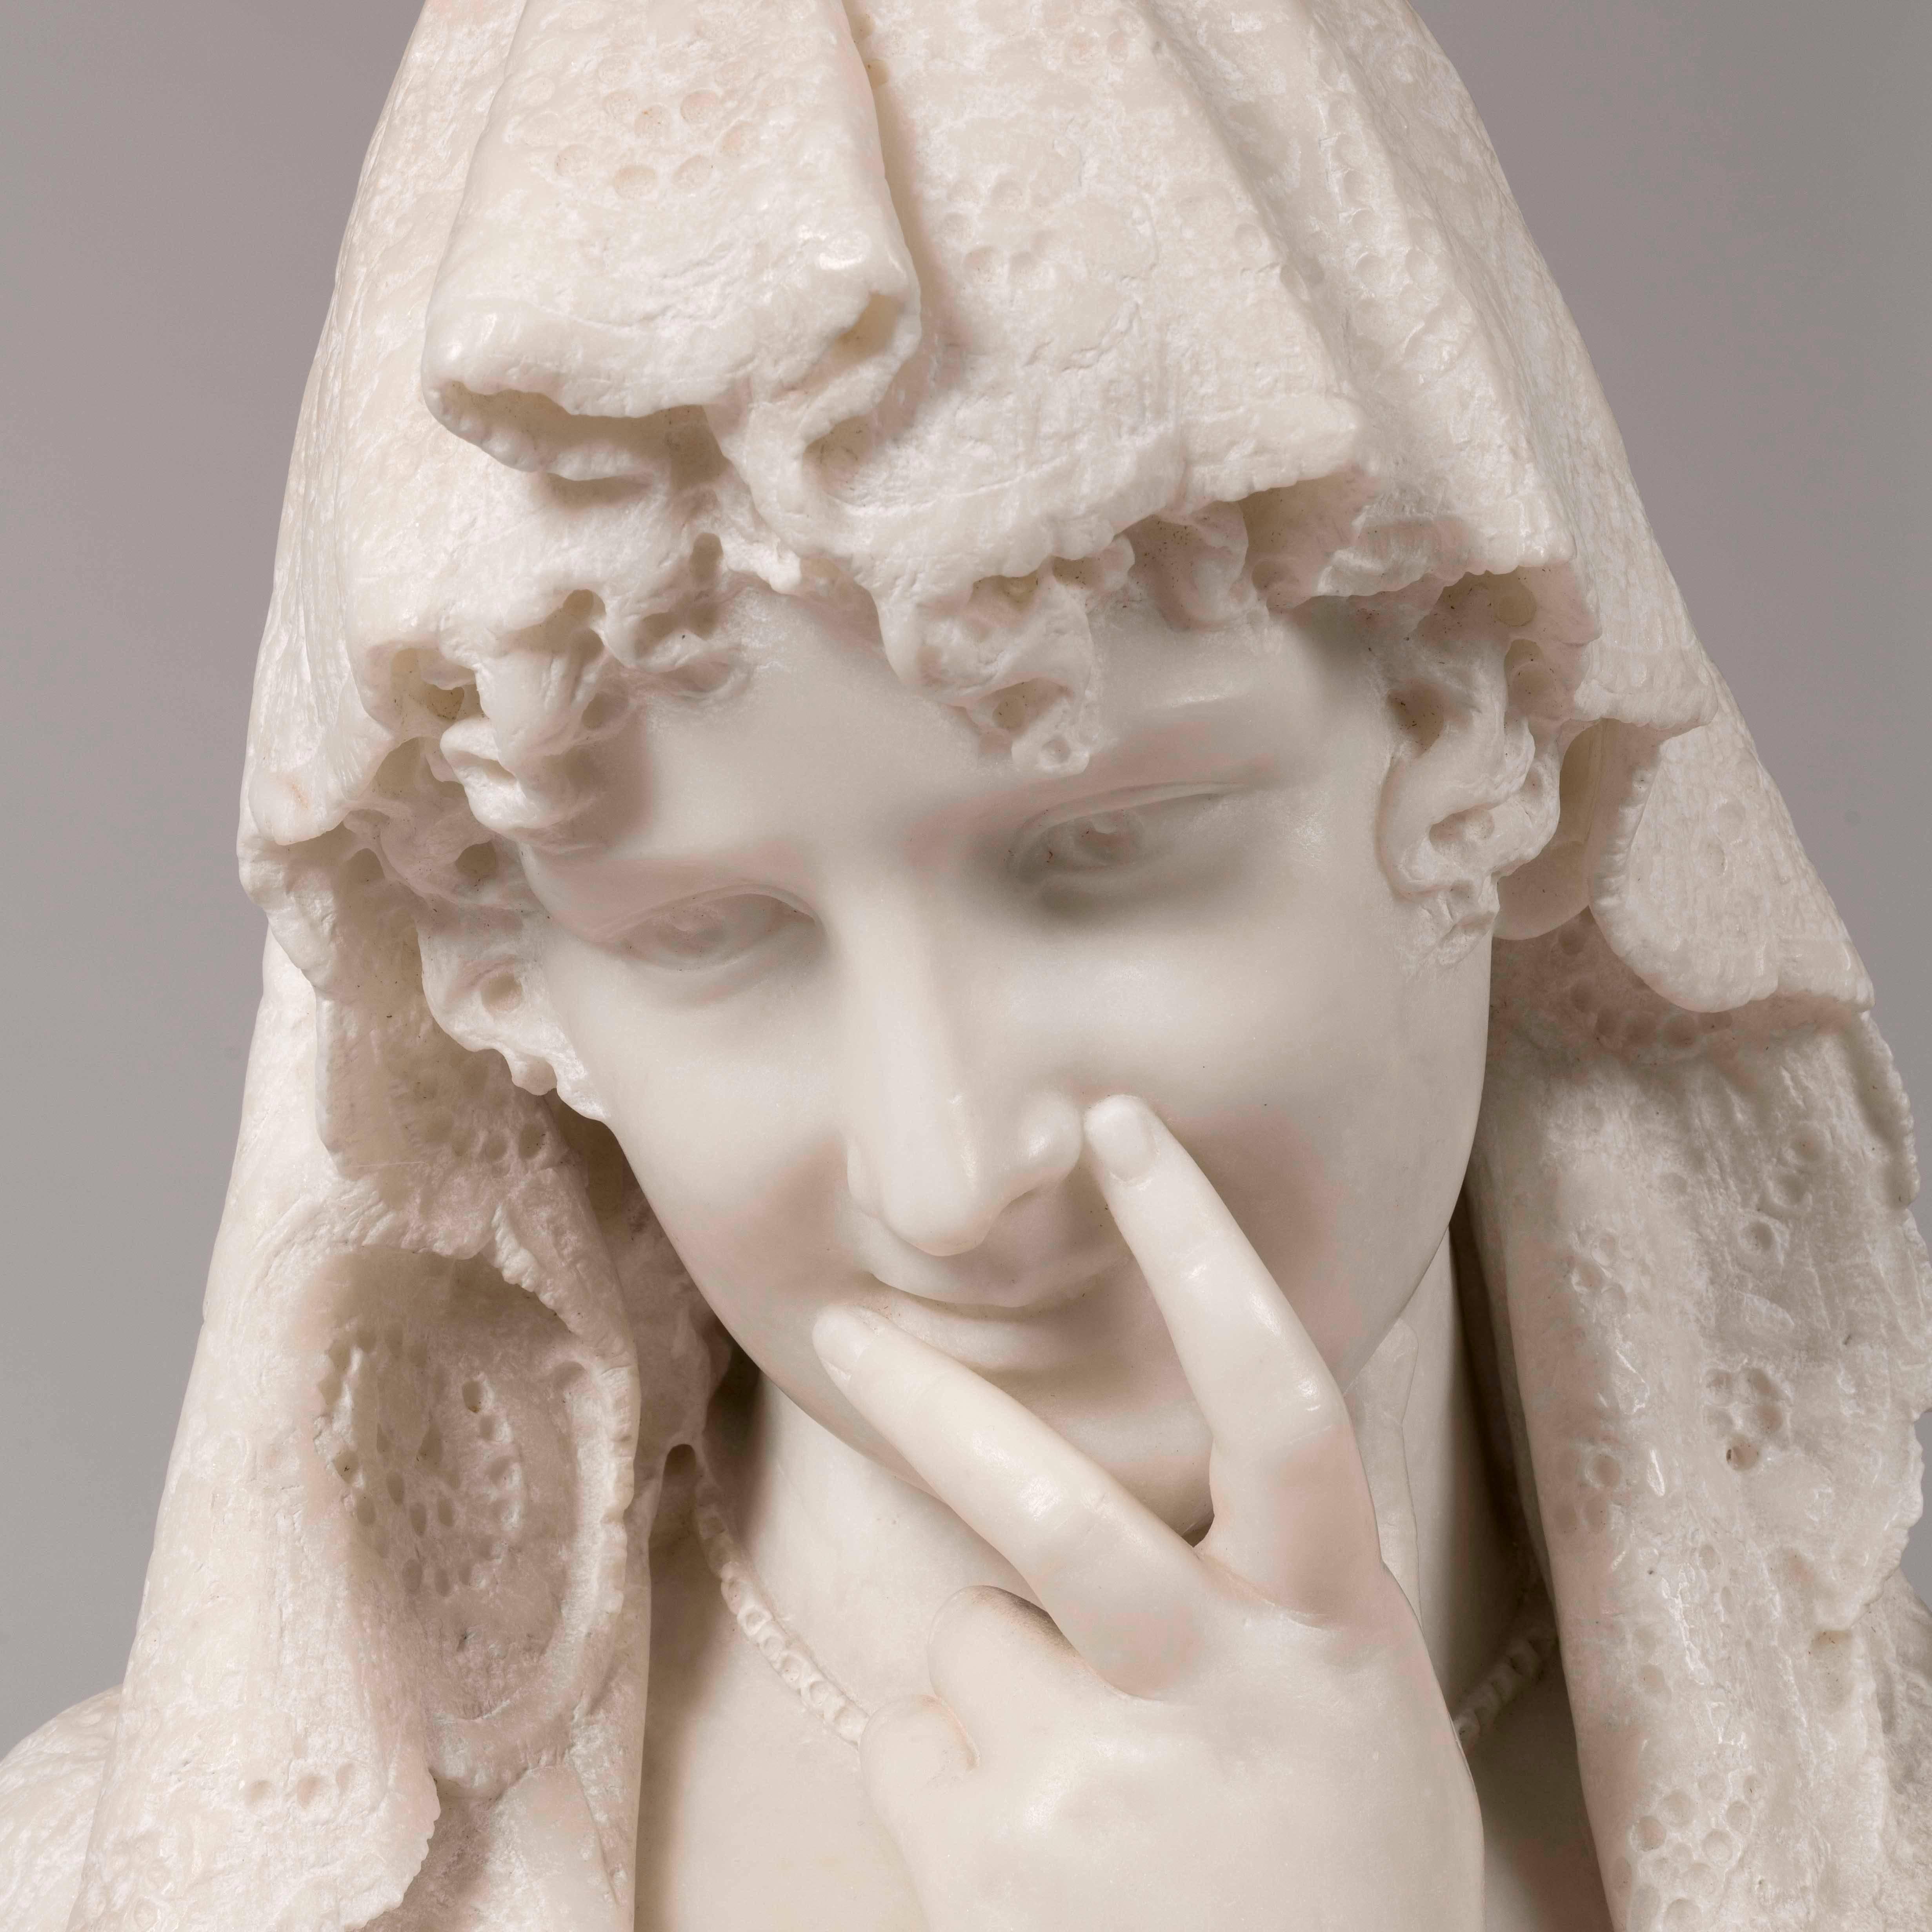 shy maiden statue